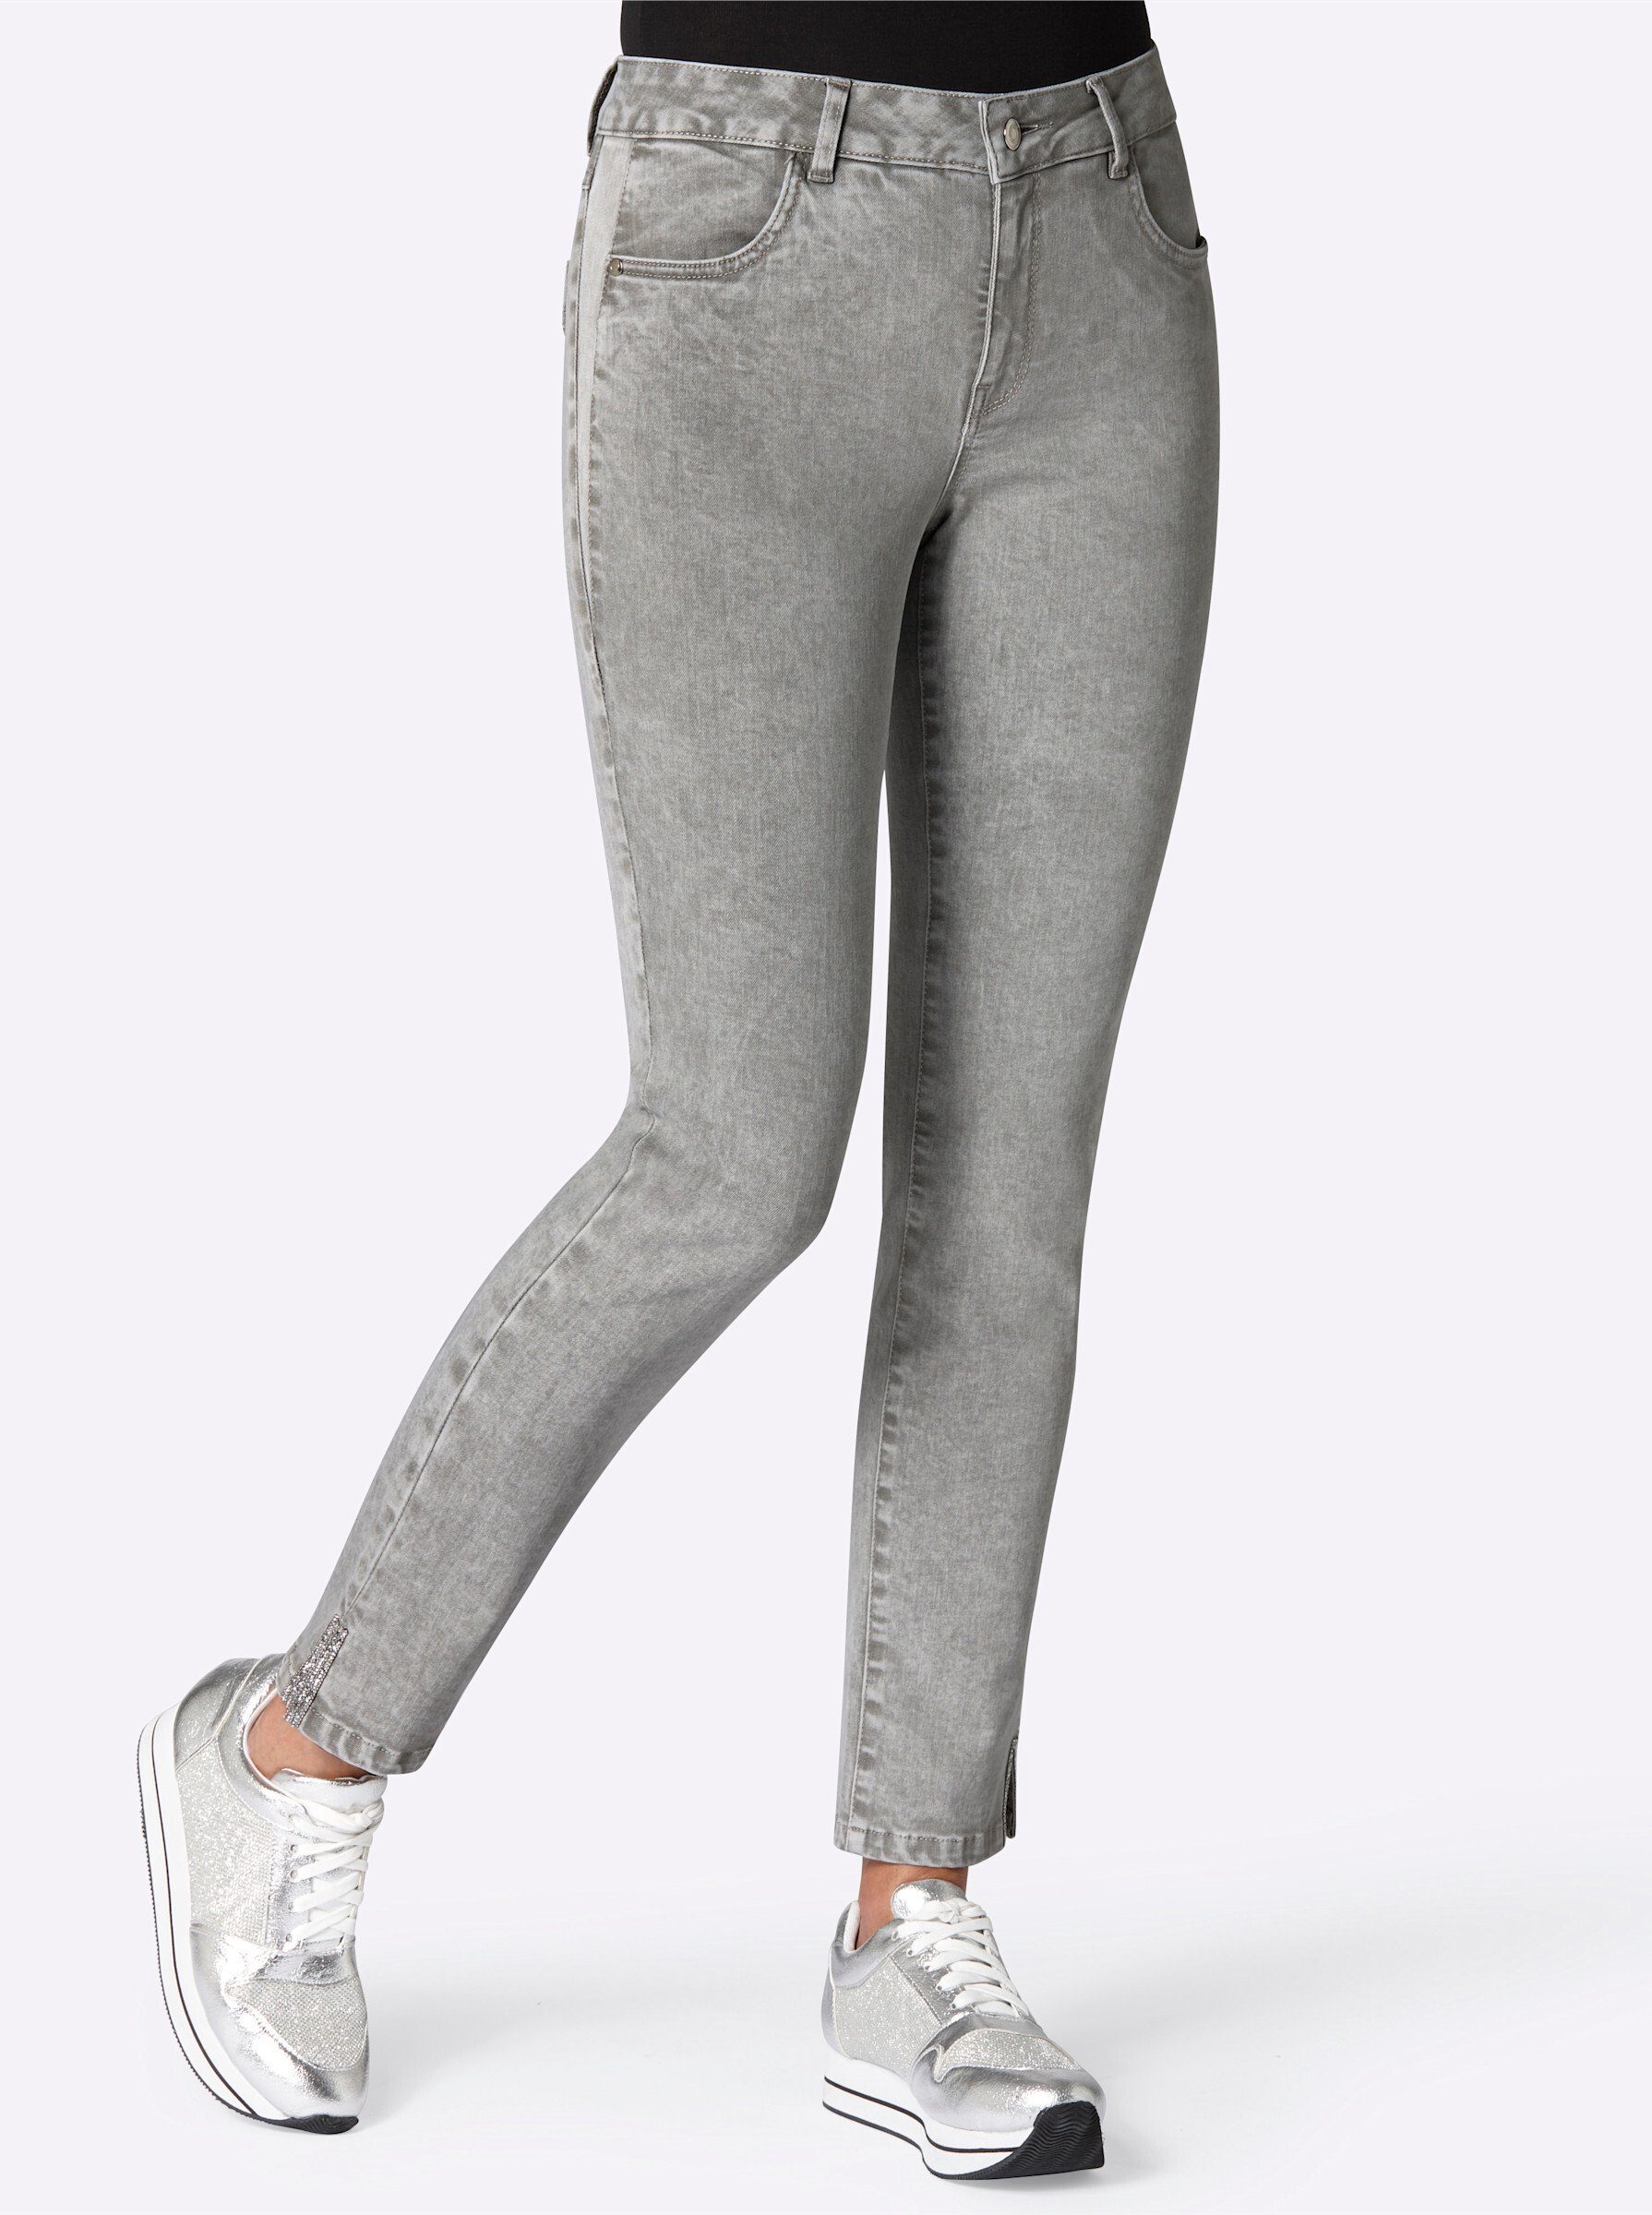 Bequeme WITT Jeans grey-denim WEIDEN